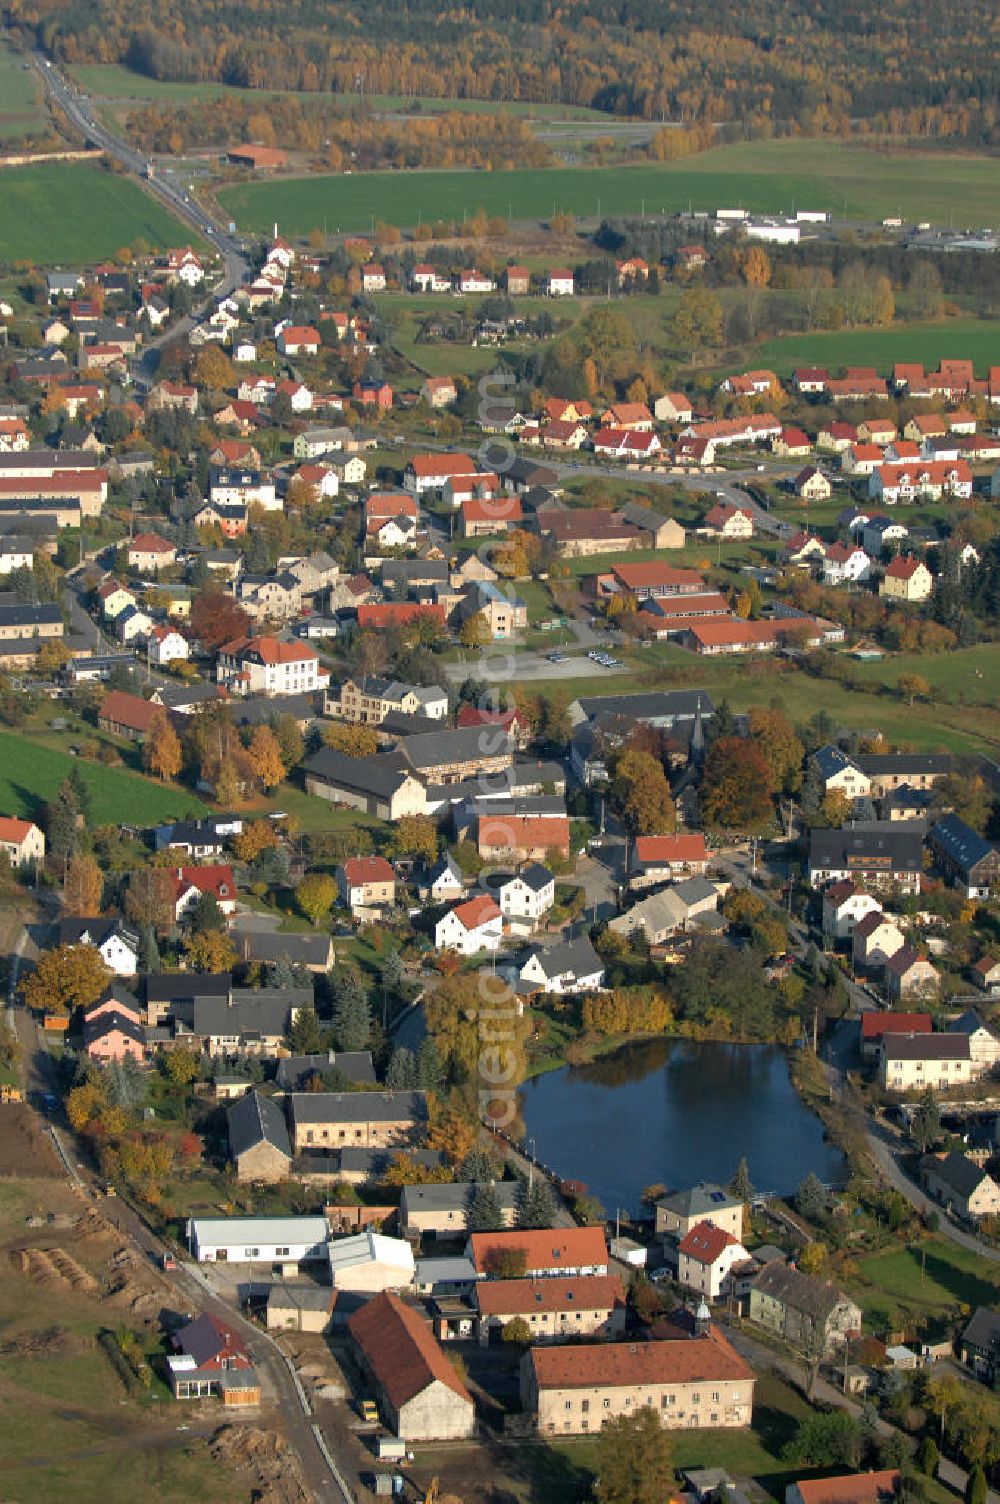 Aerial photograph Leppersdorf - Blick auf den sächsischen Ort Leppersdorf im Landkreis Bautzen. Der Ort ist weitgehend von ausgedehnten landwirtschaftlichen Anbau- und Waldflächen umgeben. In unmittelbarer Nähe befindet sich ein hochmodernes Milchverarbeitungswerk der Sachsenmilch AG, in dem etwa 1.700 Mitarbeiter beschäftigt werden.